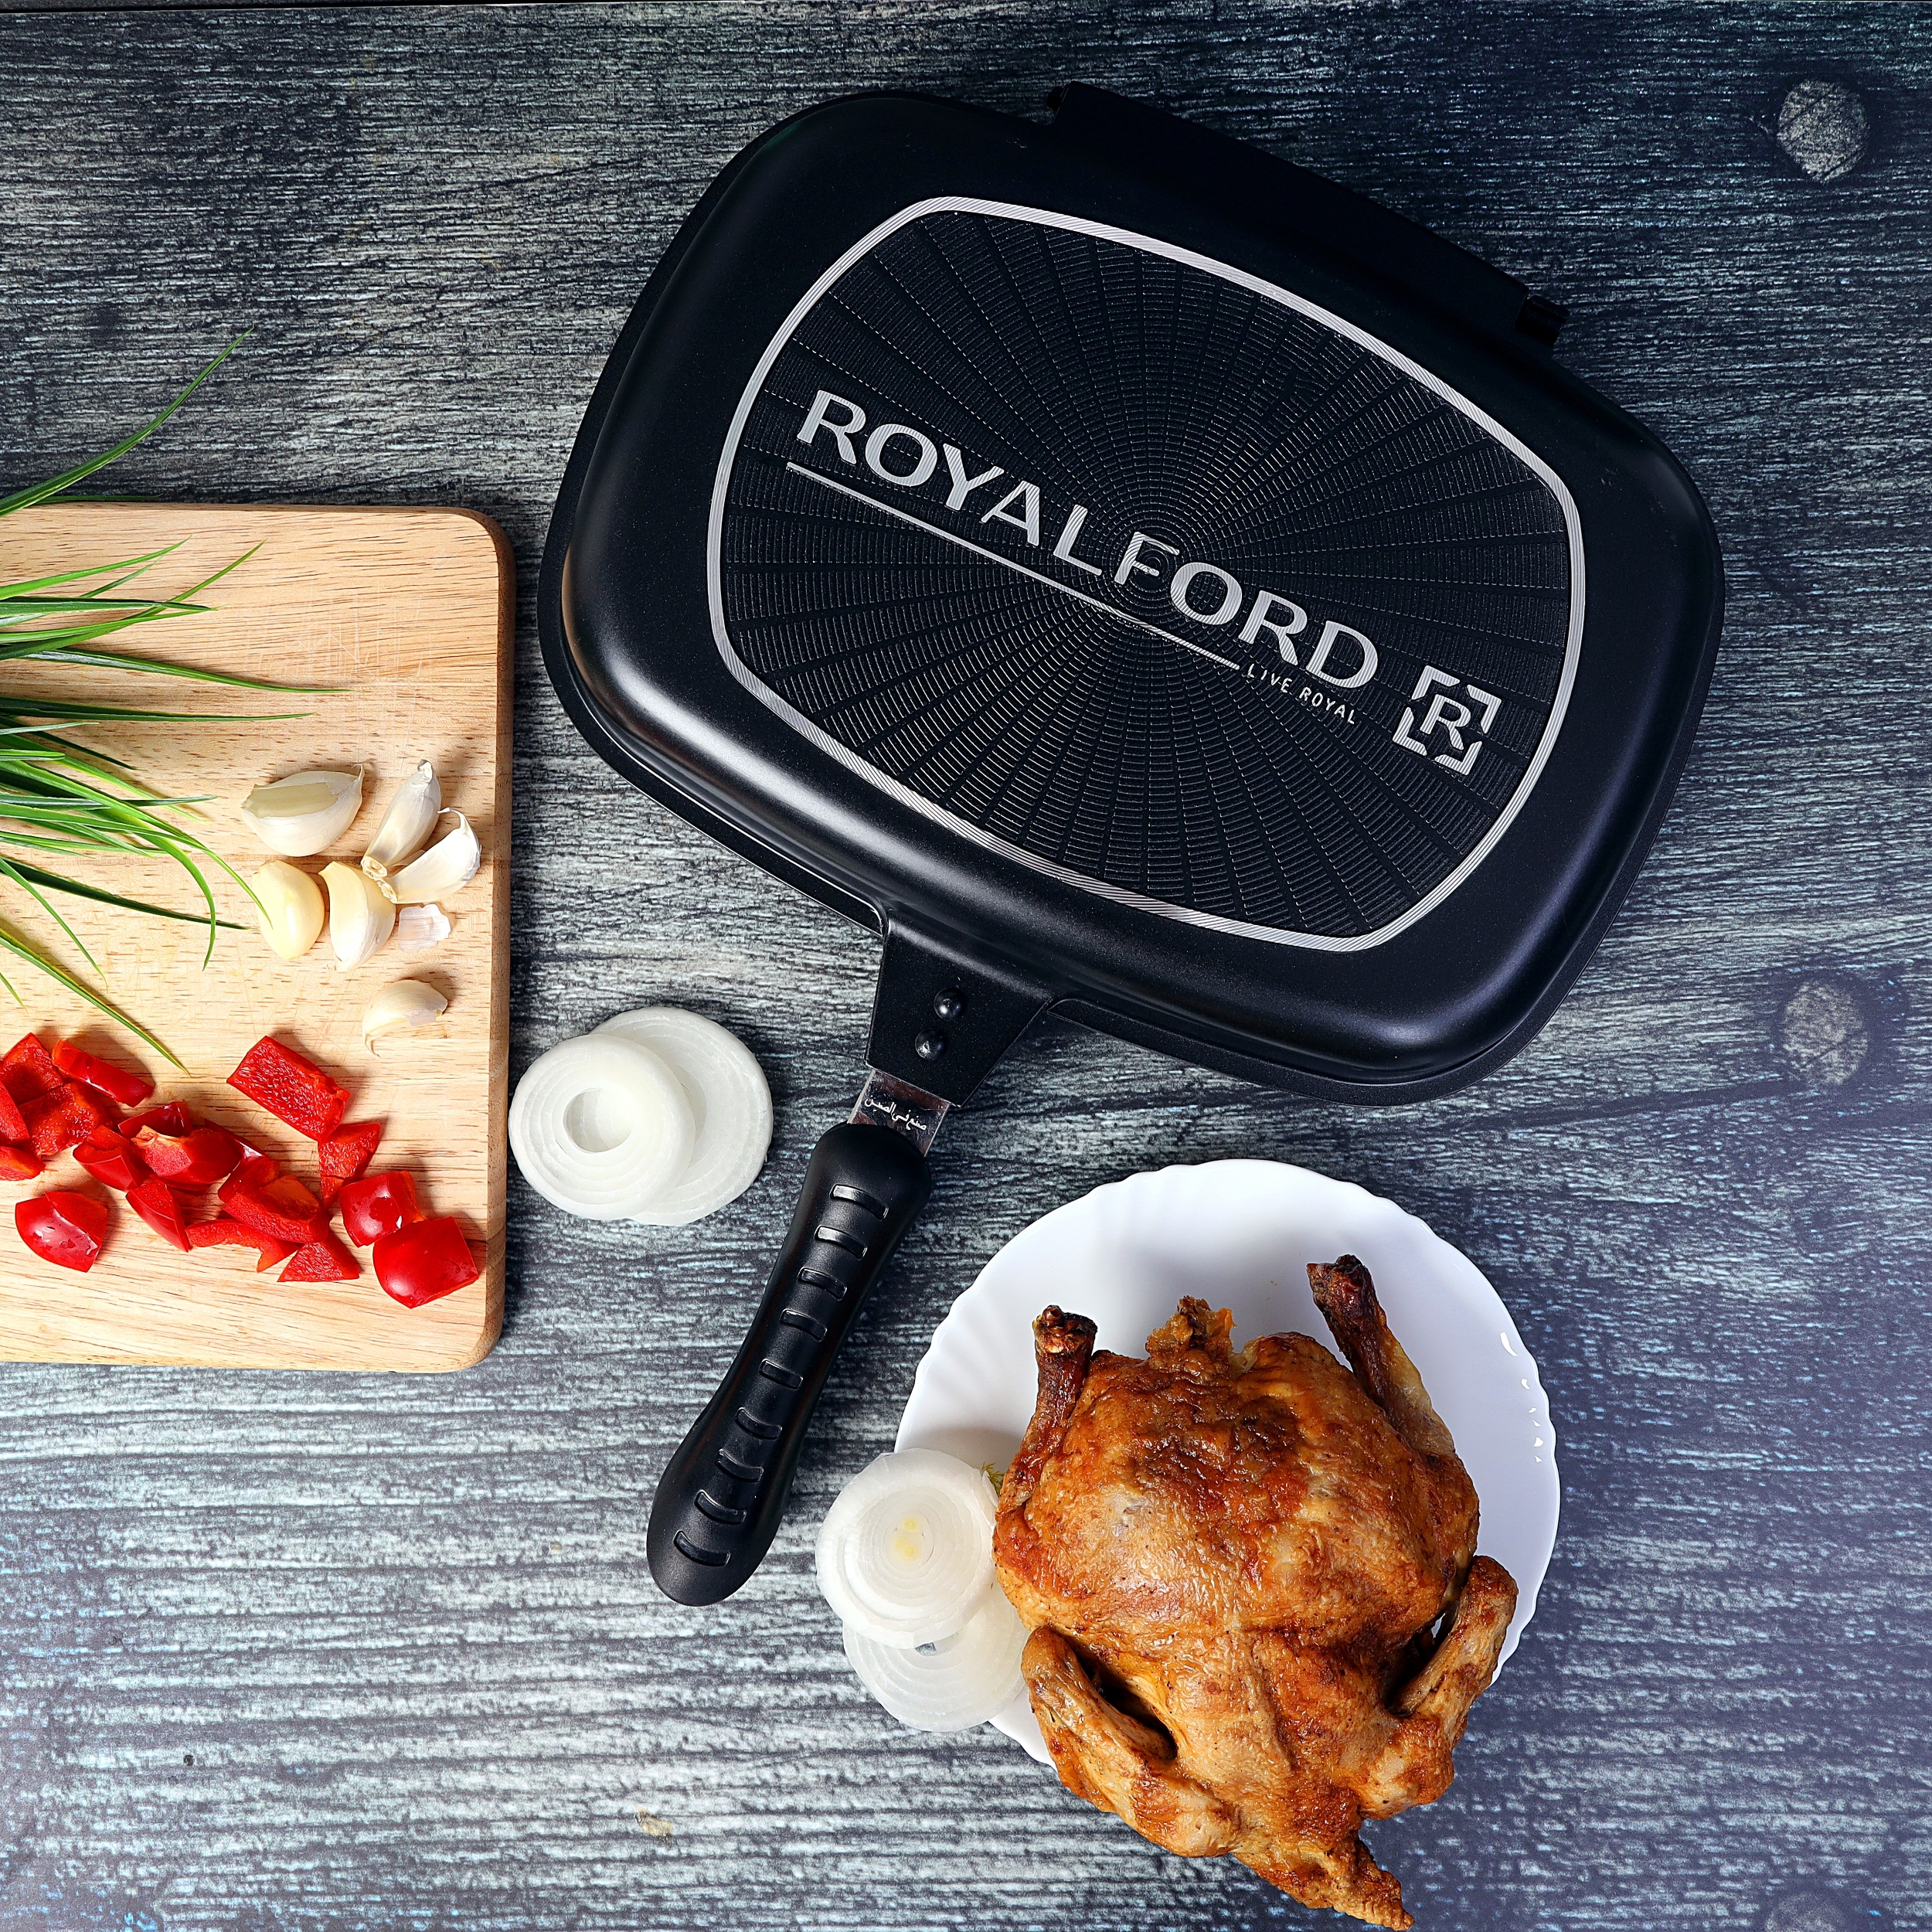 مقلاة شواء ( ذات وجهين مقاس 32 سم ) - أسود Royalford - Double Grill Pan - Die-Cast Double Sided Non-Stick Griddle Pan